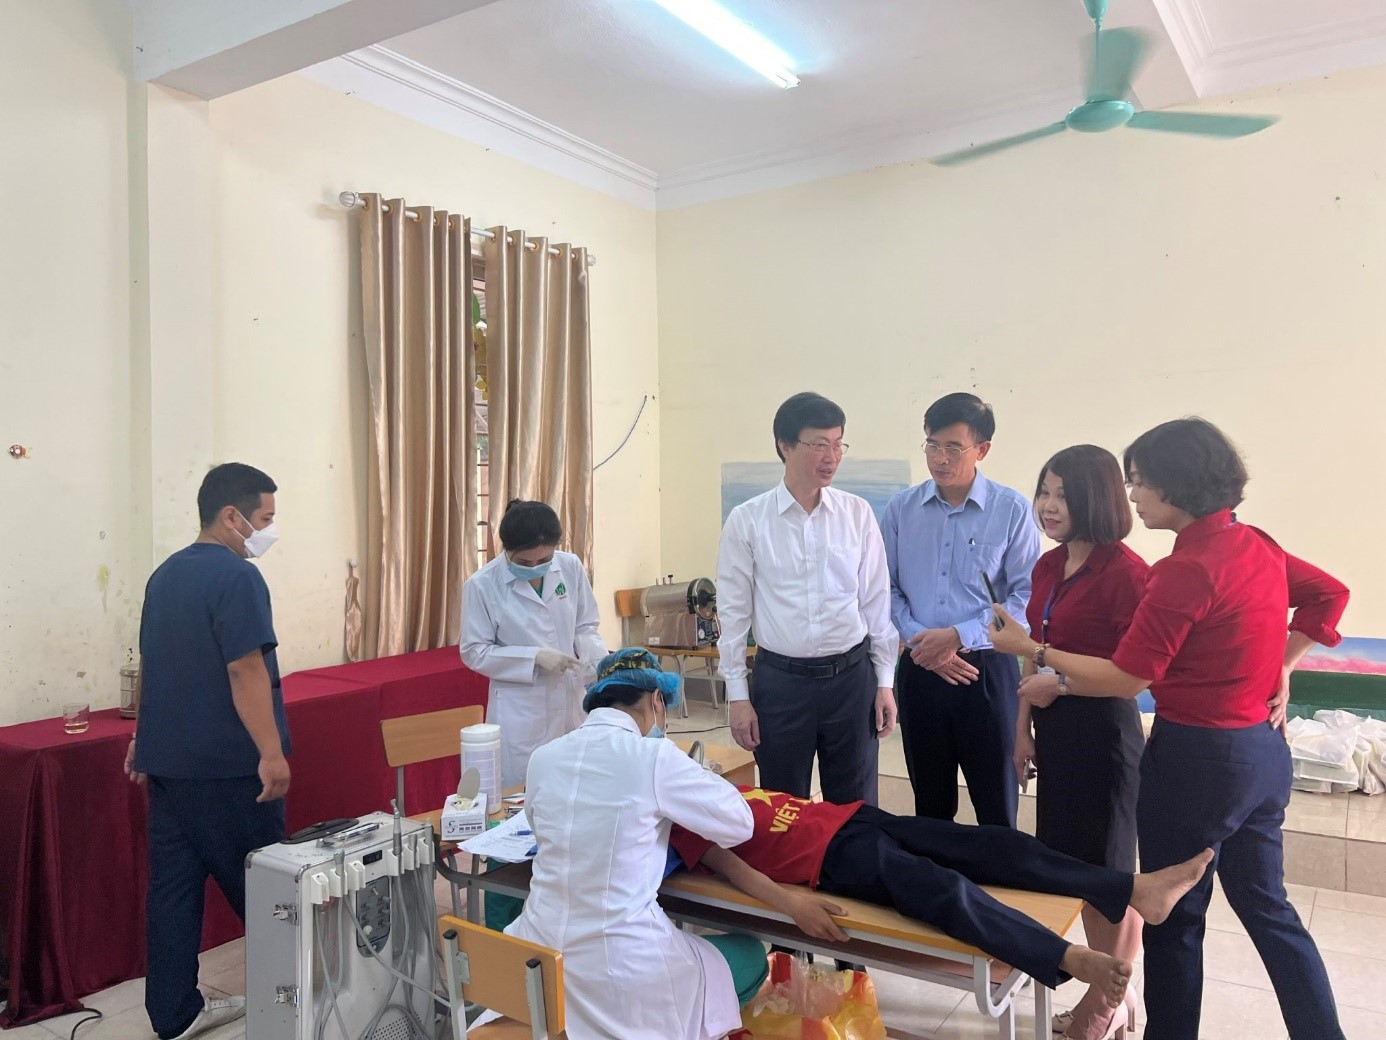 PGS. TS. Nguyễn Quang Bình, Phó Giám đốc Bệnh viện và ThS.Trần Văn Phú, Trưởng phòng TCCB  đến thăm và giám sát hoạt động khám chữa răng tại trường